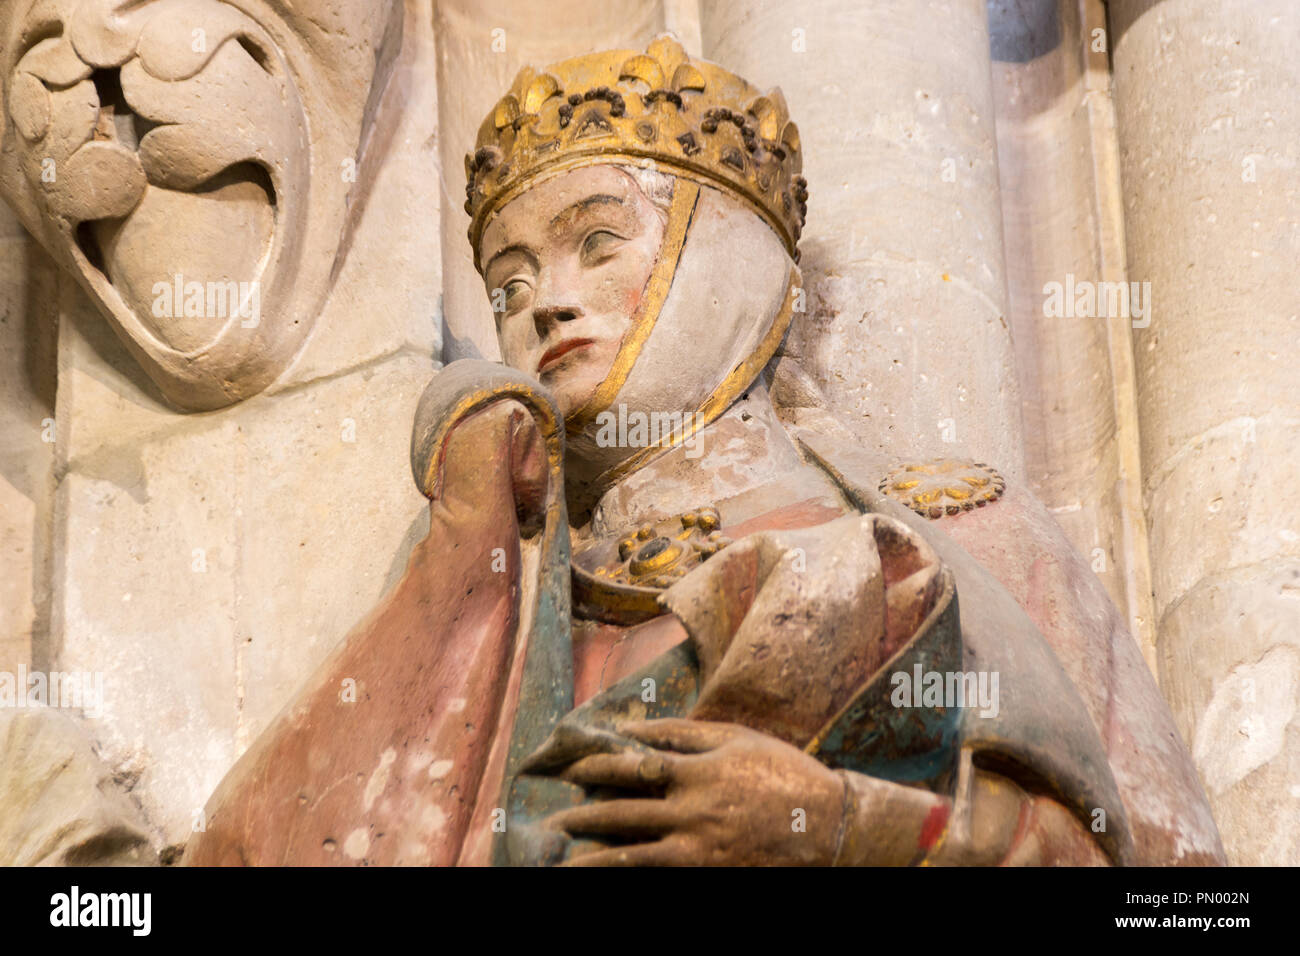 Naumburg, Allemagne - 14 septembre 2018 : Avis d'Uta von Naumburg. La statue est l'une des plus importantes sculptures de la période gothique allemand. L Banque D'Images